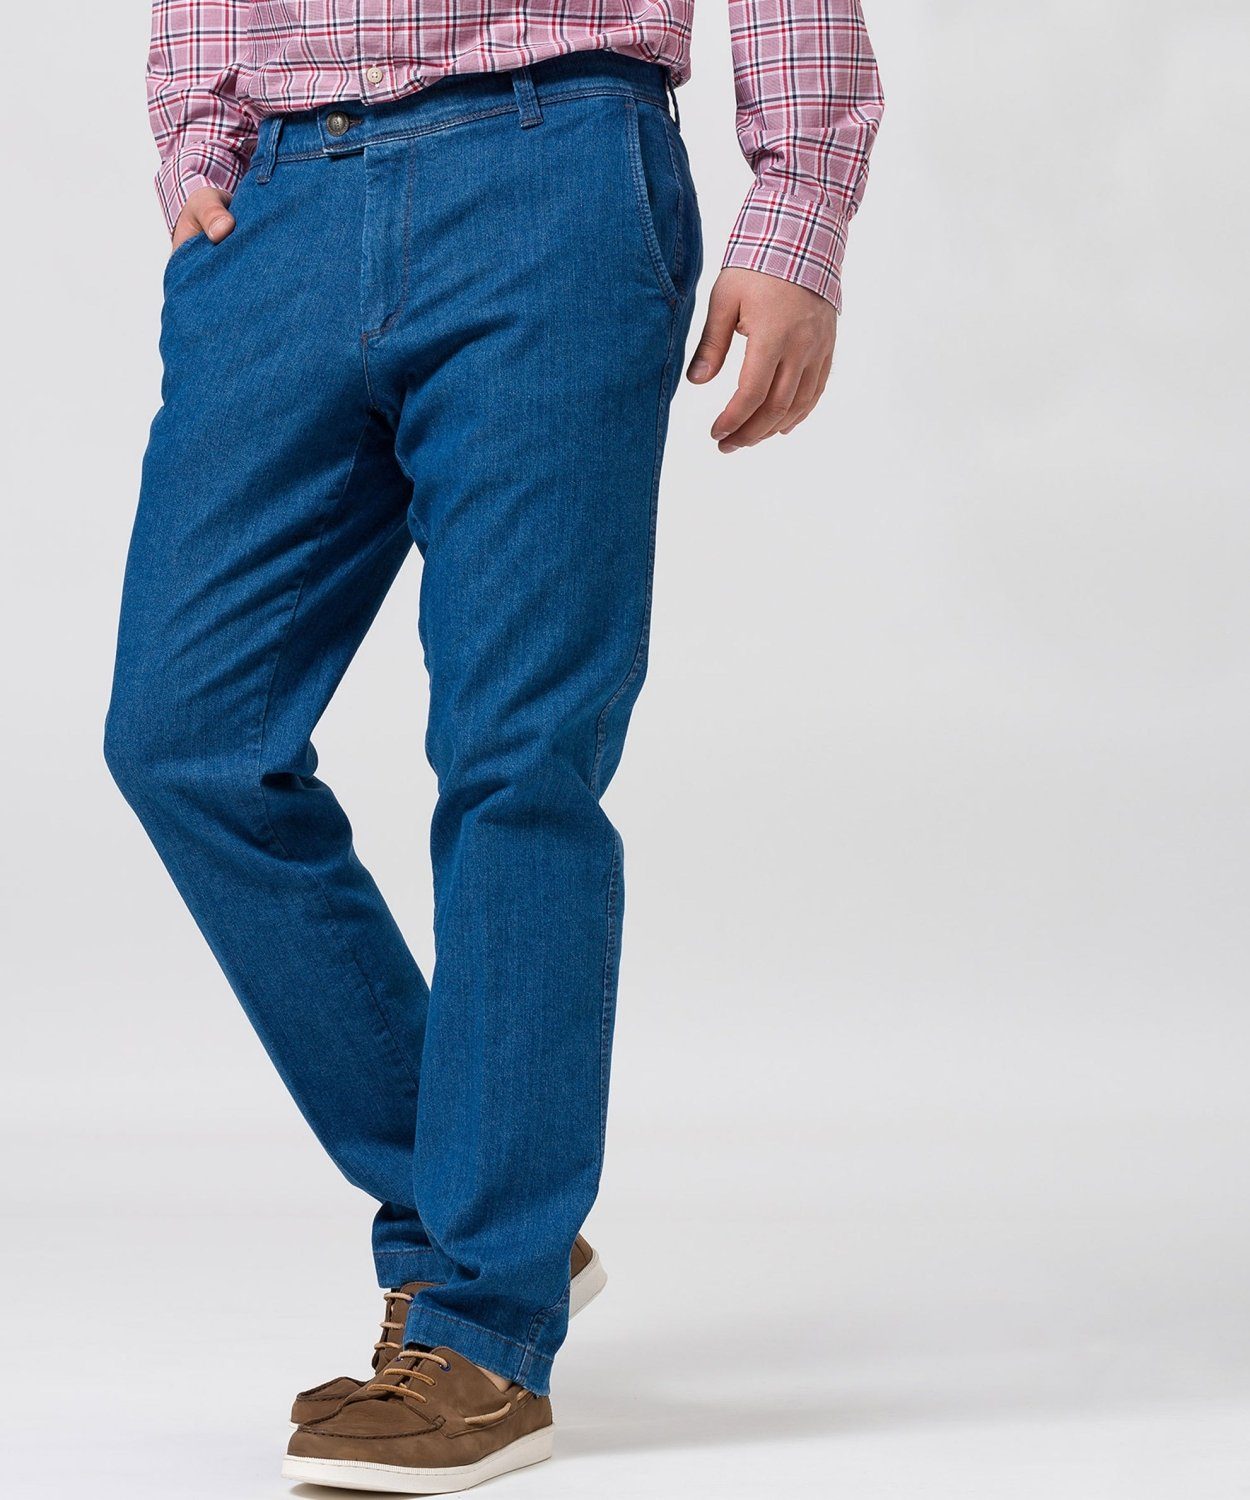 EUREX by BRAX 5-Pocket-Jeans »JIM 316« online kaufen | OTTO